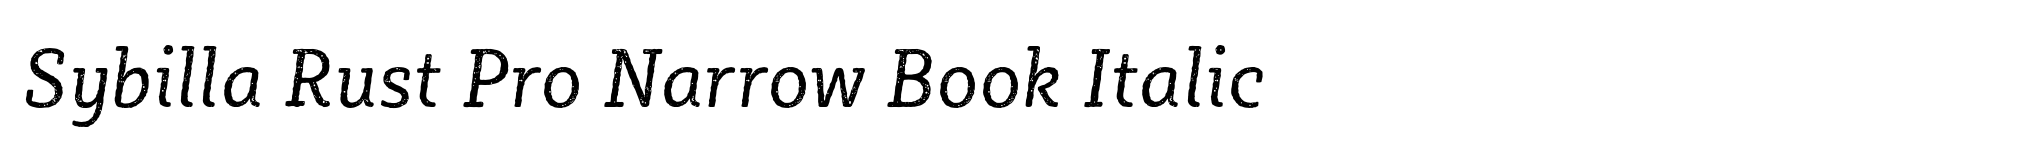 Sybilla Rust Pro Narrow Book Italic image